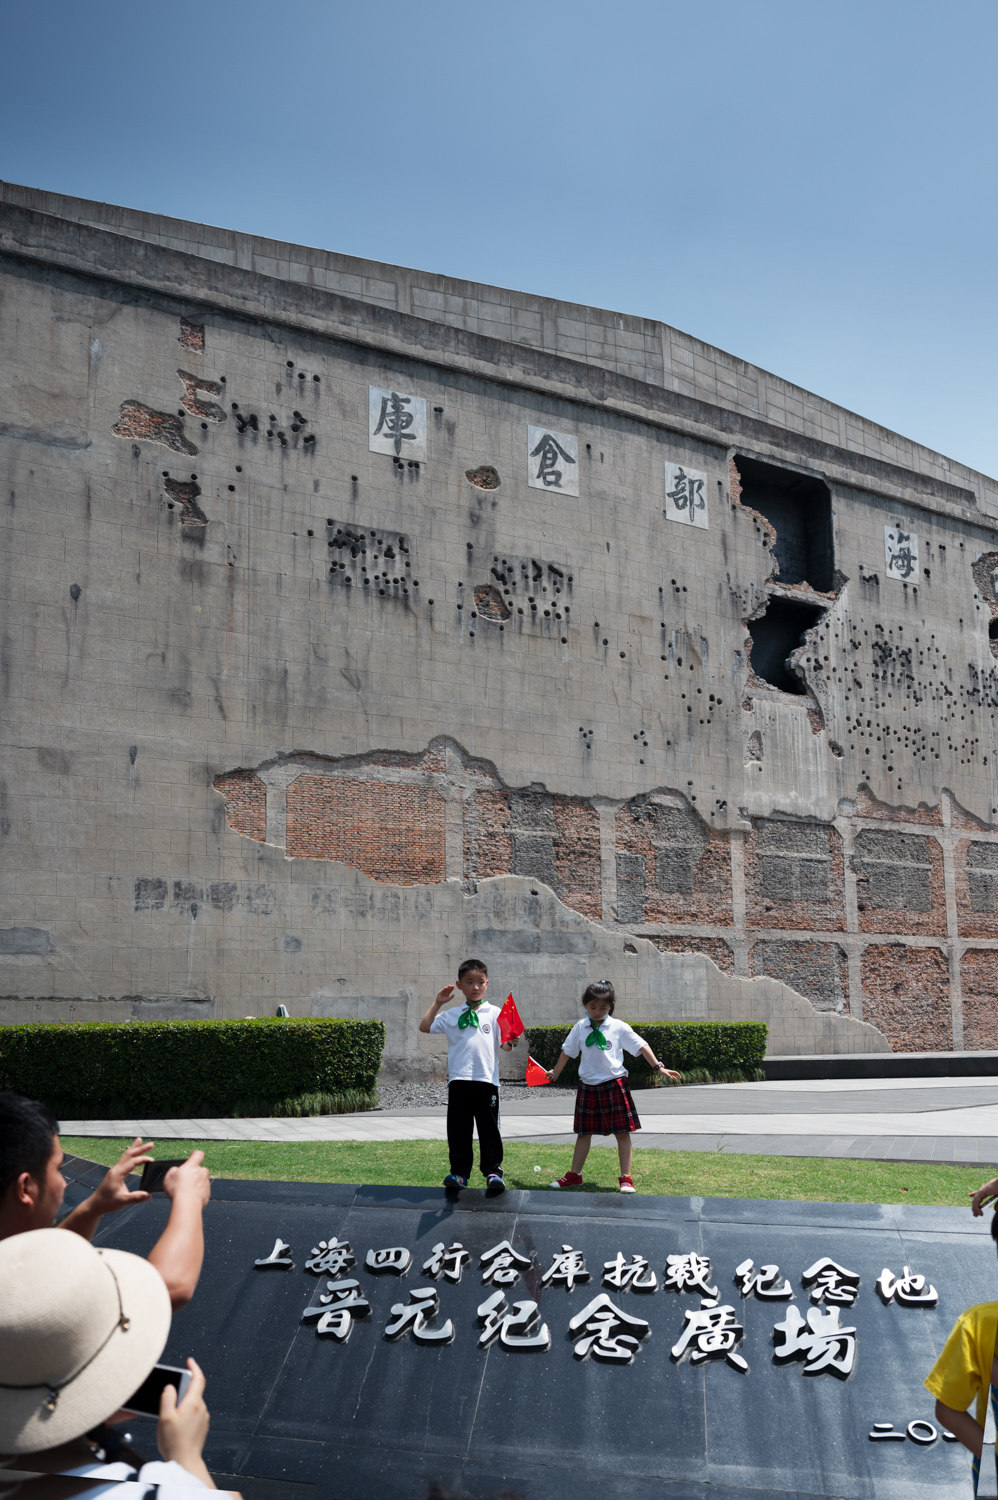 上海四行仓库晋元纪念广场。家长在布满弹孔的四行仓库西墙前为孩子拍照留念。